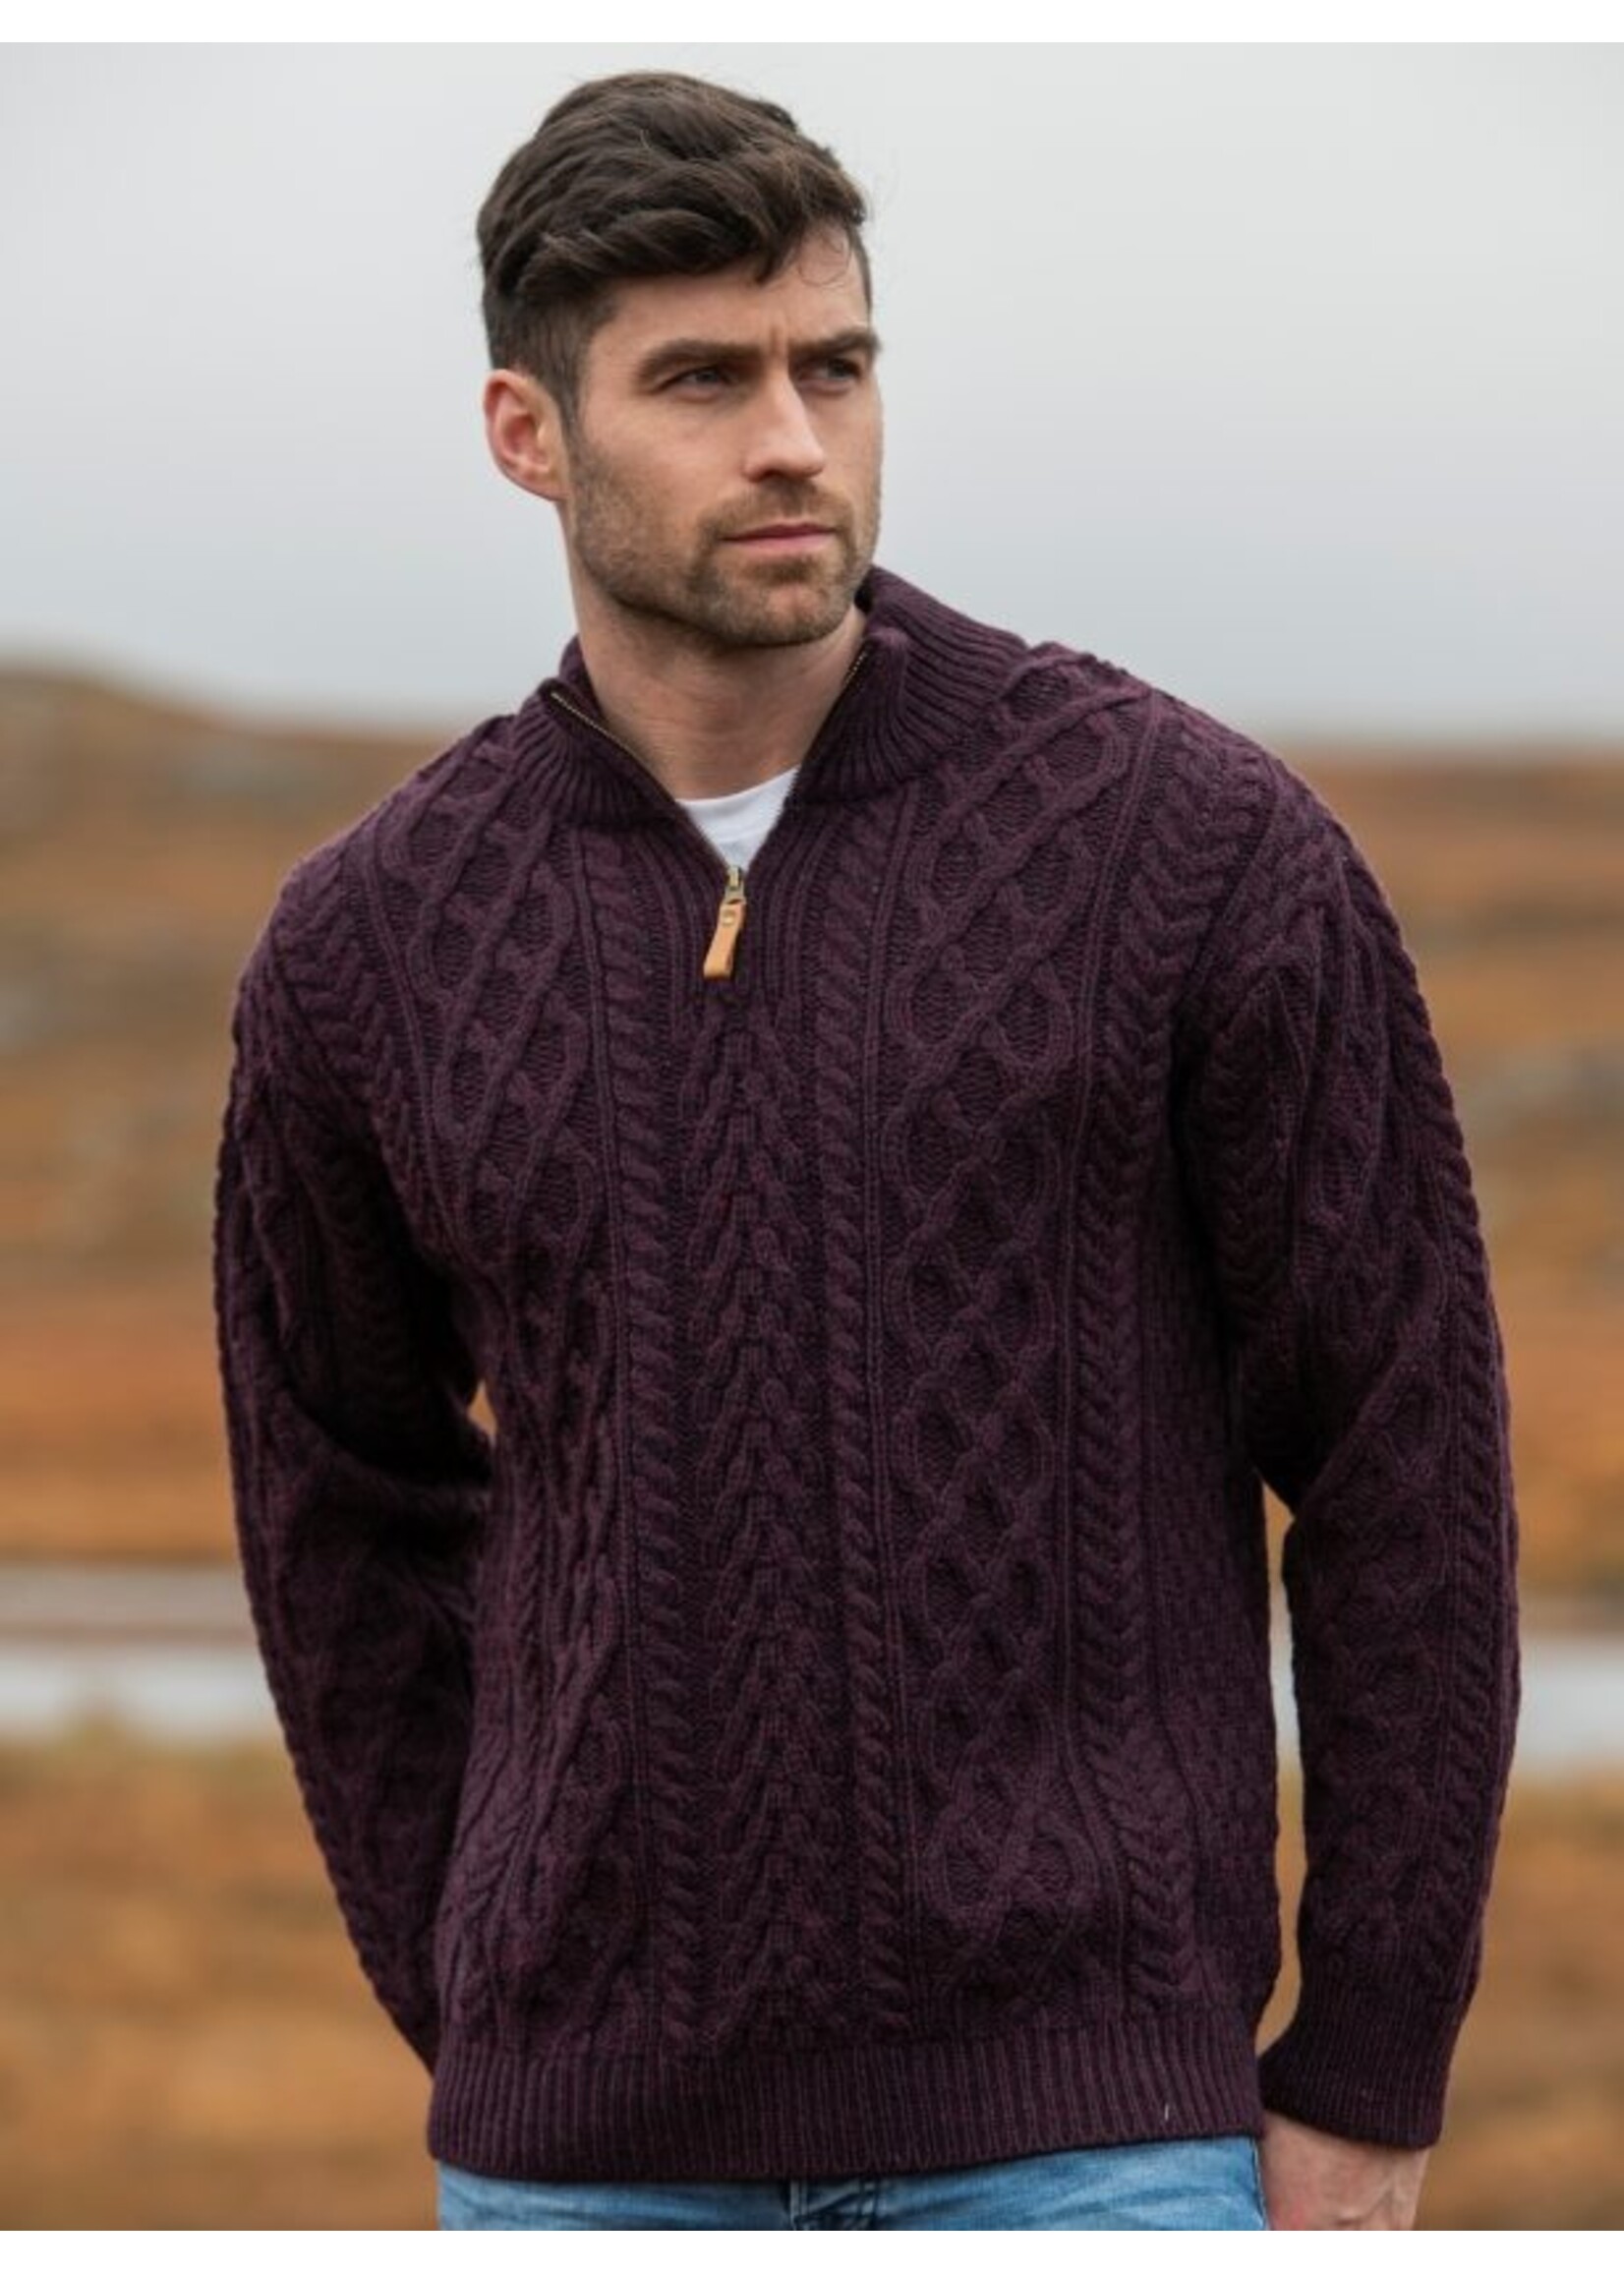 West End Knitwear Irish Sweater -M- Donegal 1/2 Zip